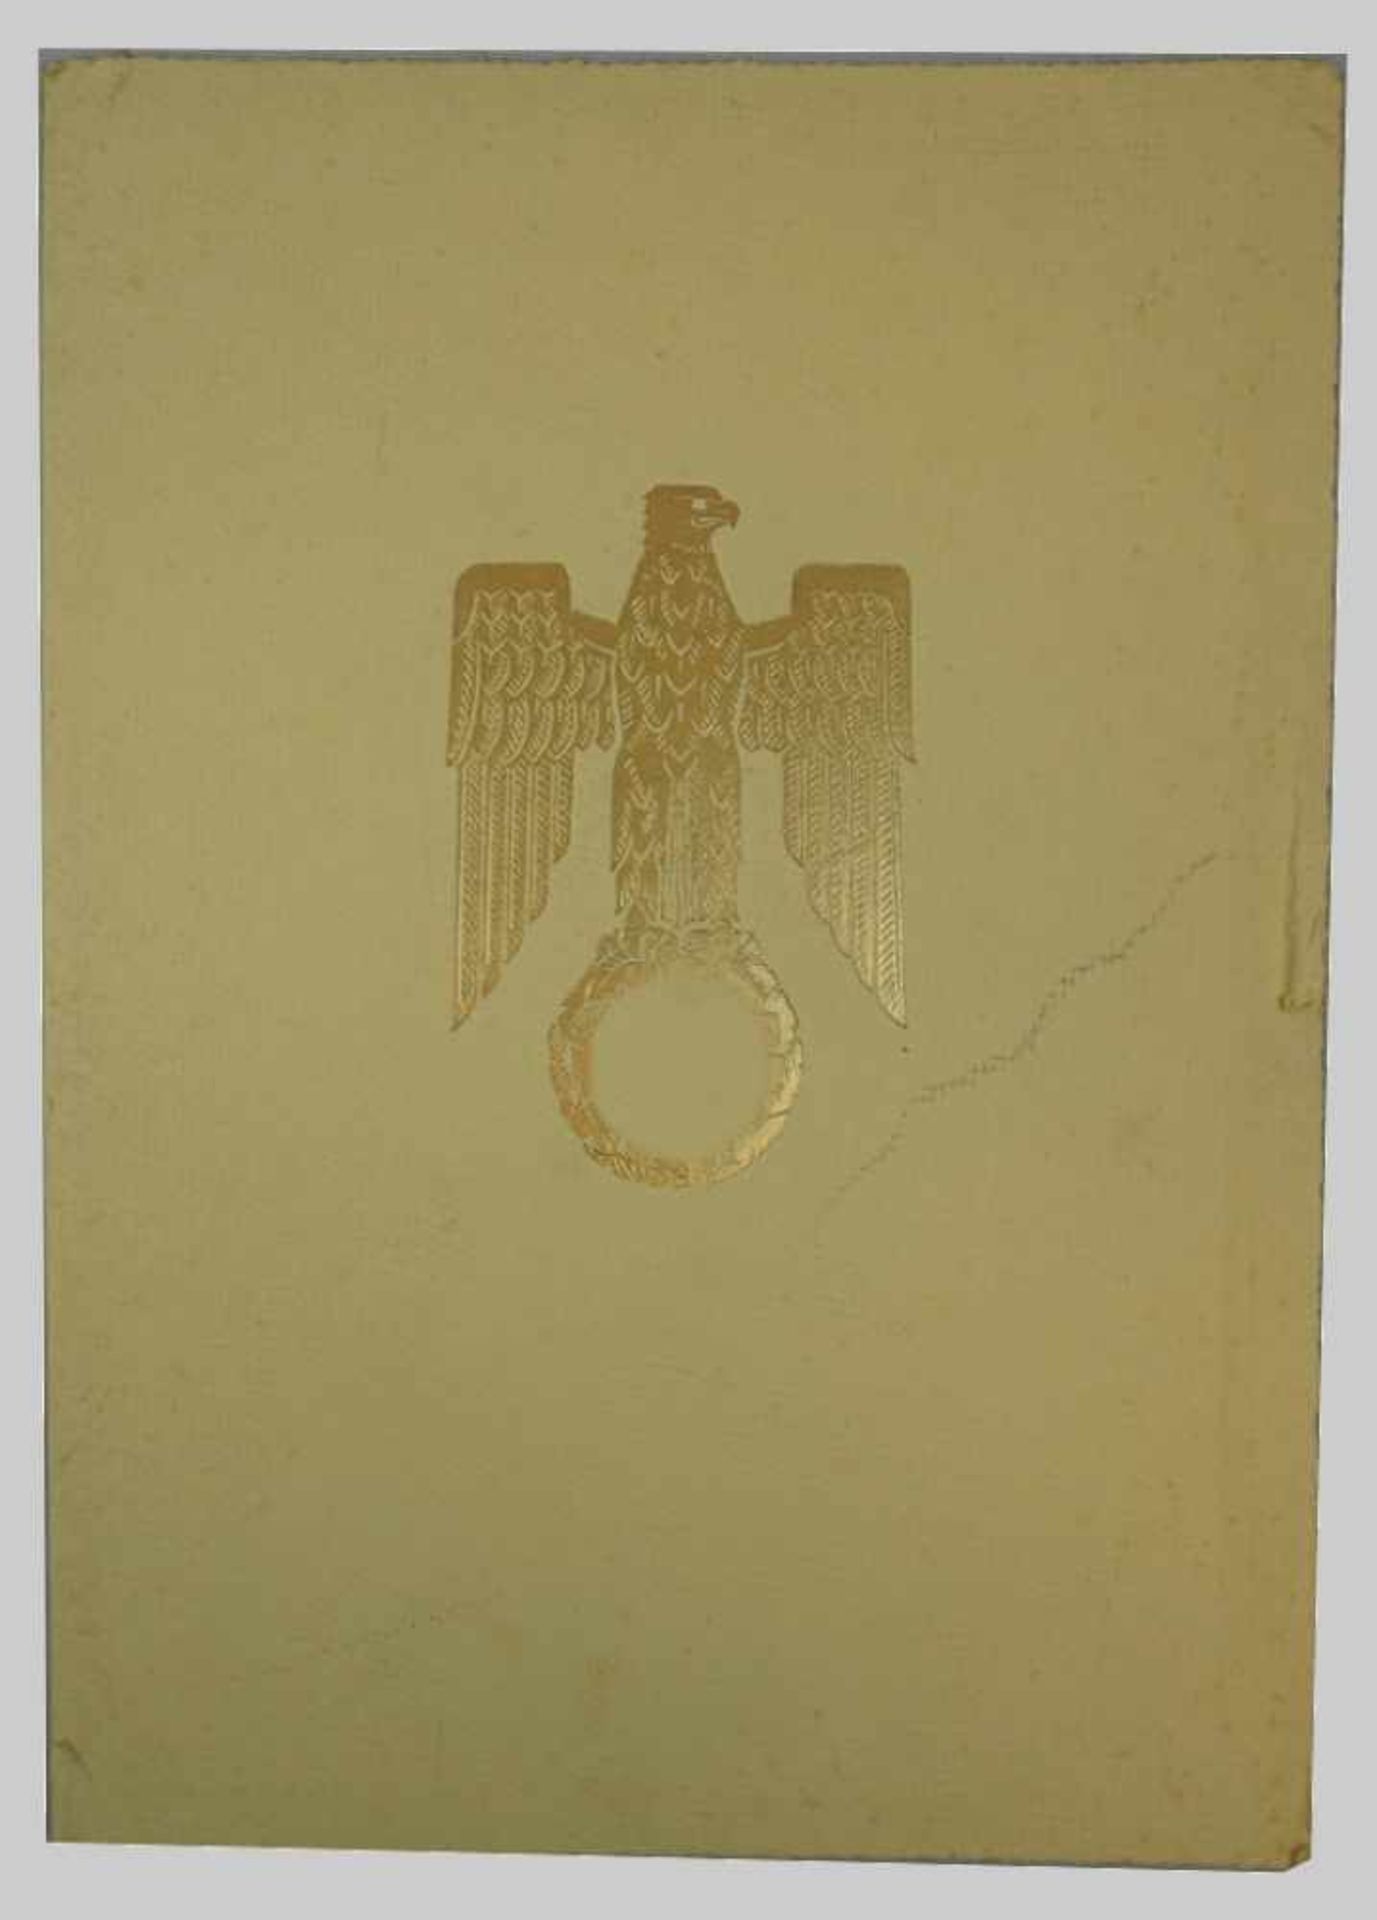 1 Konv. Dokumente/Urkunden 3. Reich u.a.:"Beförderung zum Major z.D." dat. 1941 mit Unterschrift u. - Image 2 of 2